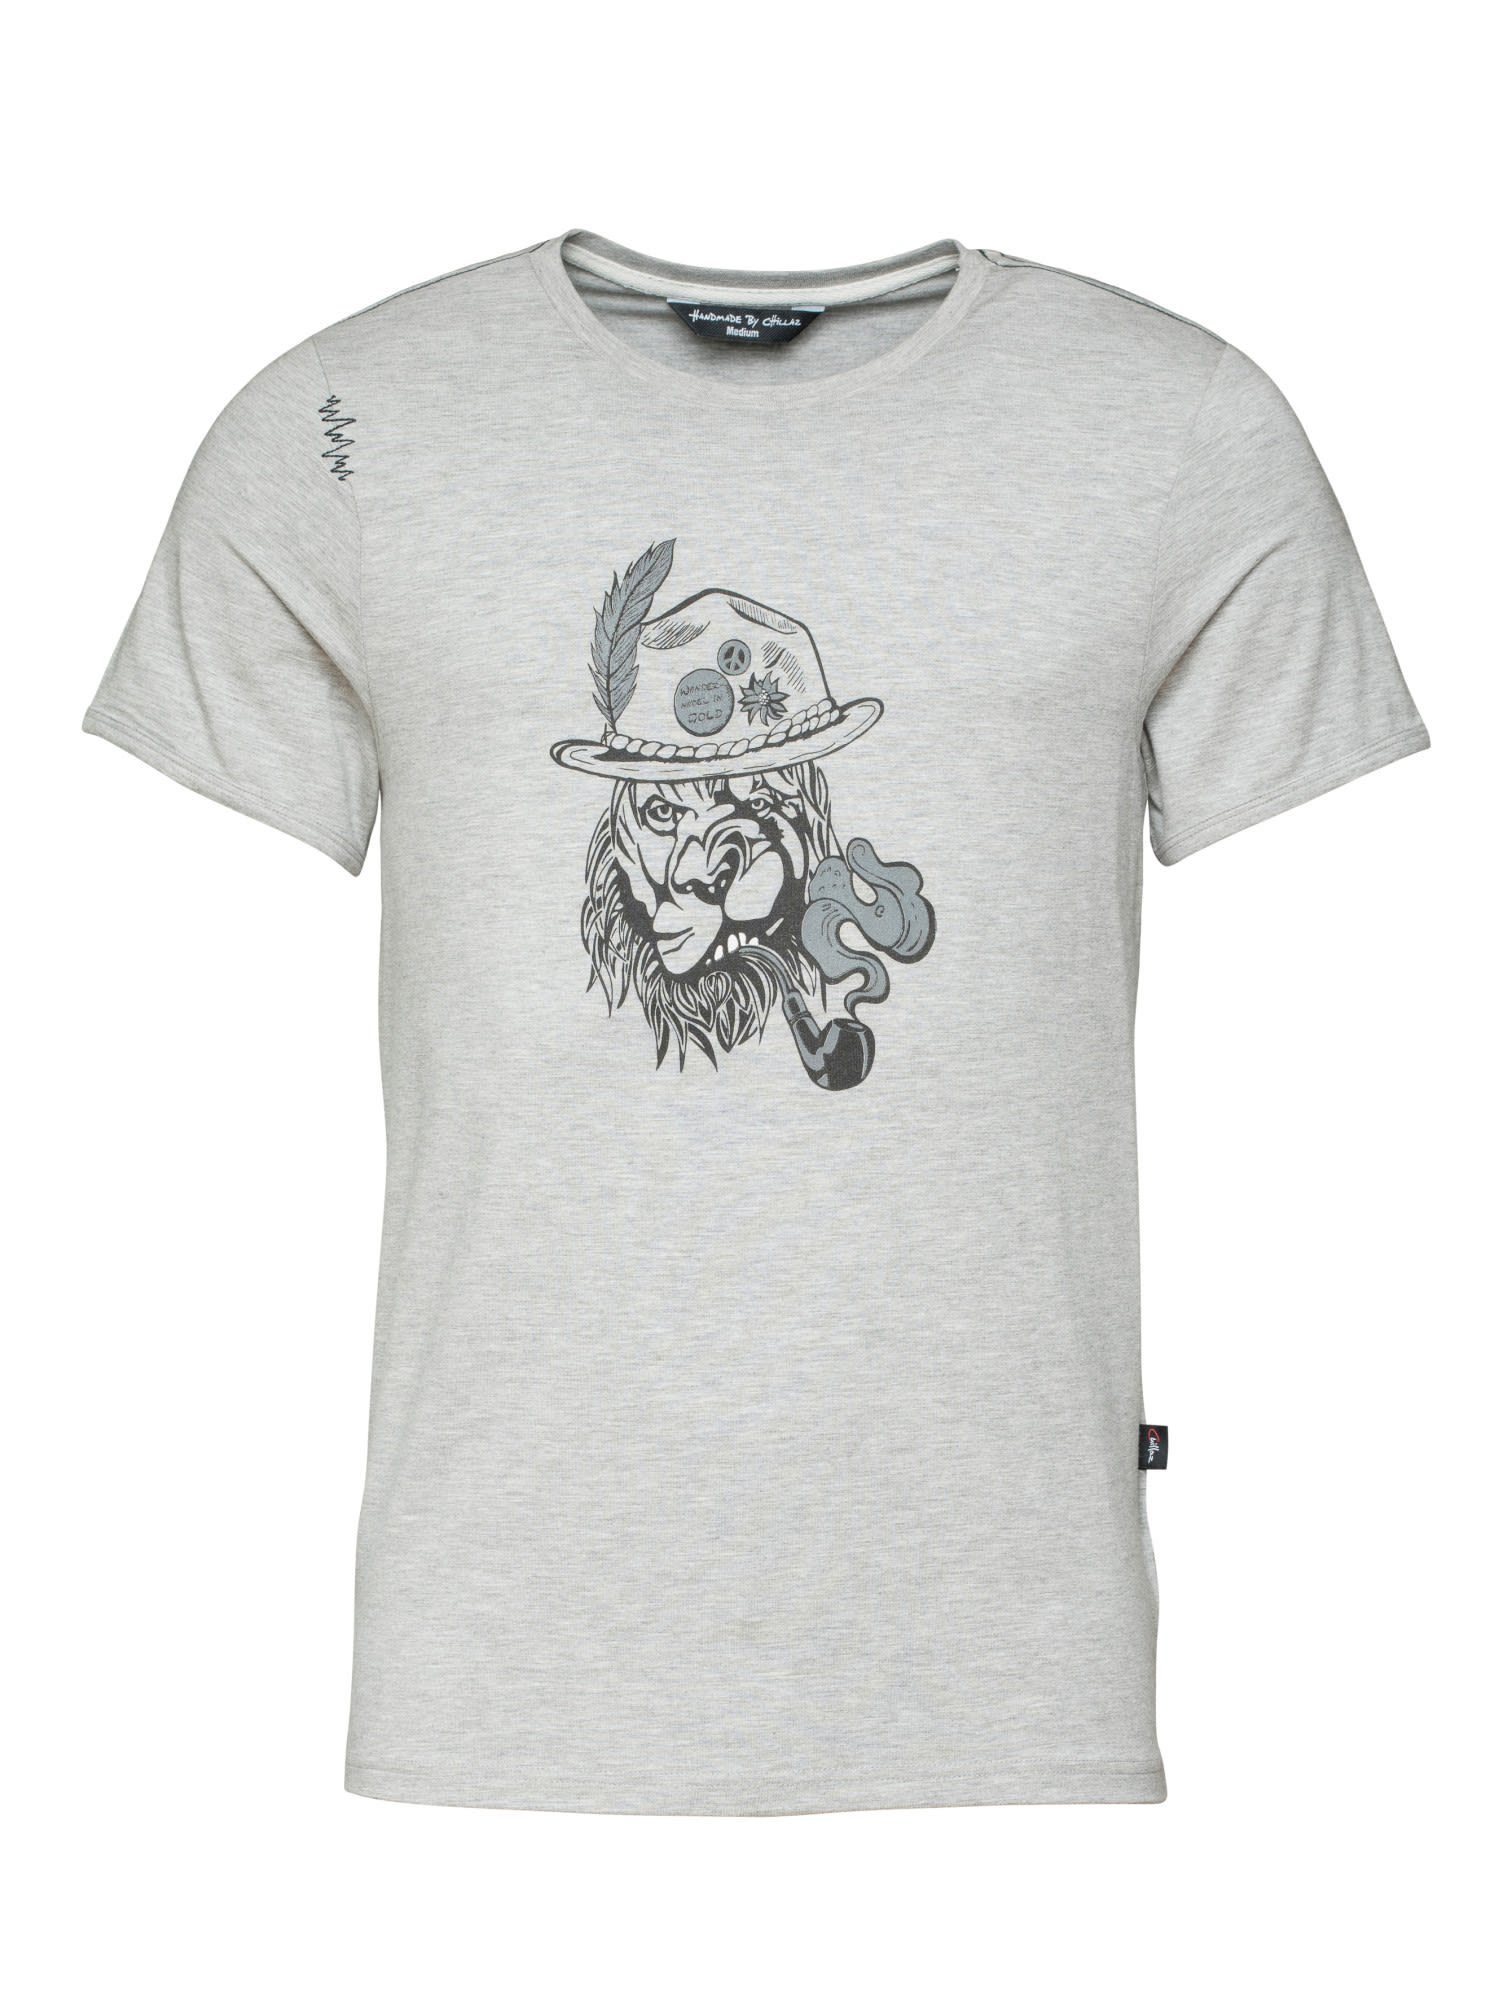 Chillaz T-Shirt Chillaz M Lion T-shirt Herren Kurzarm-Shirt Grey - Melange